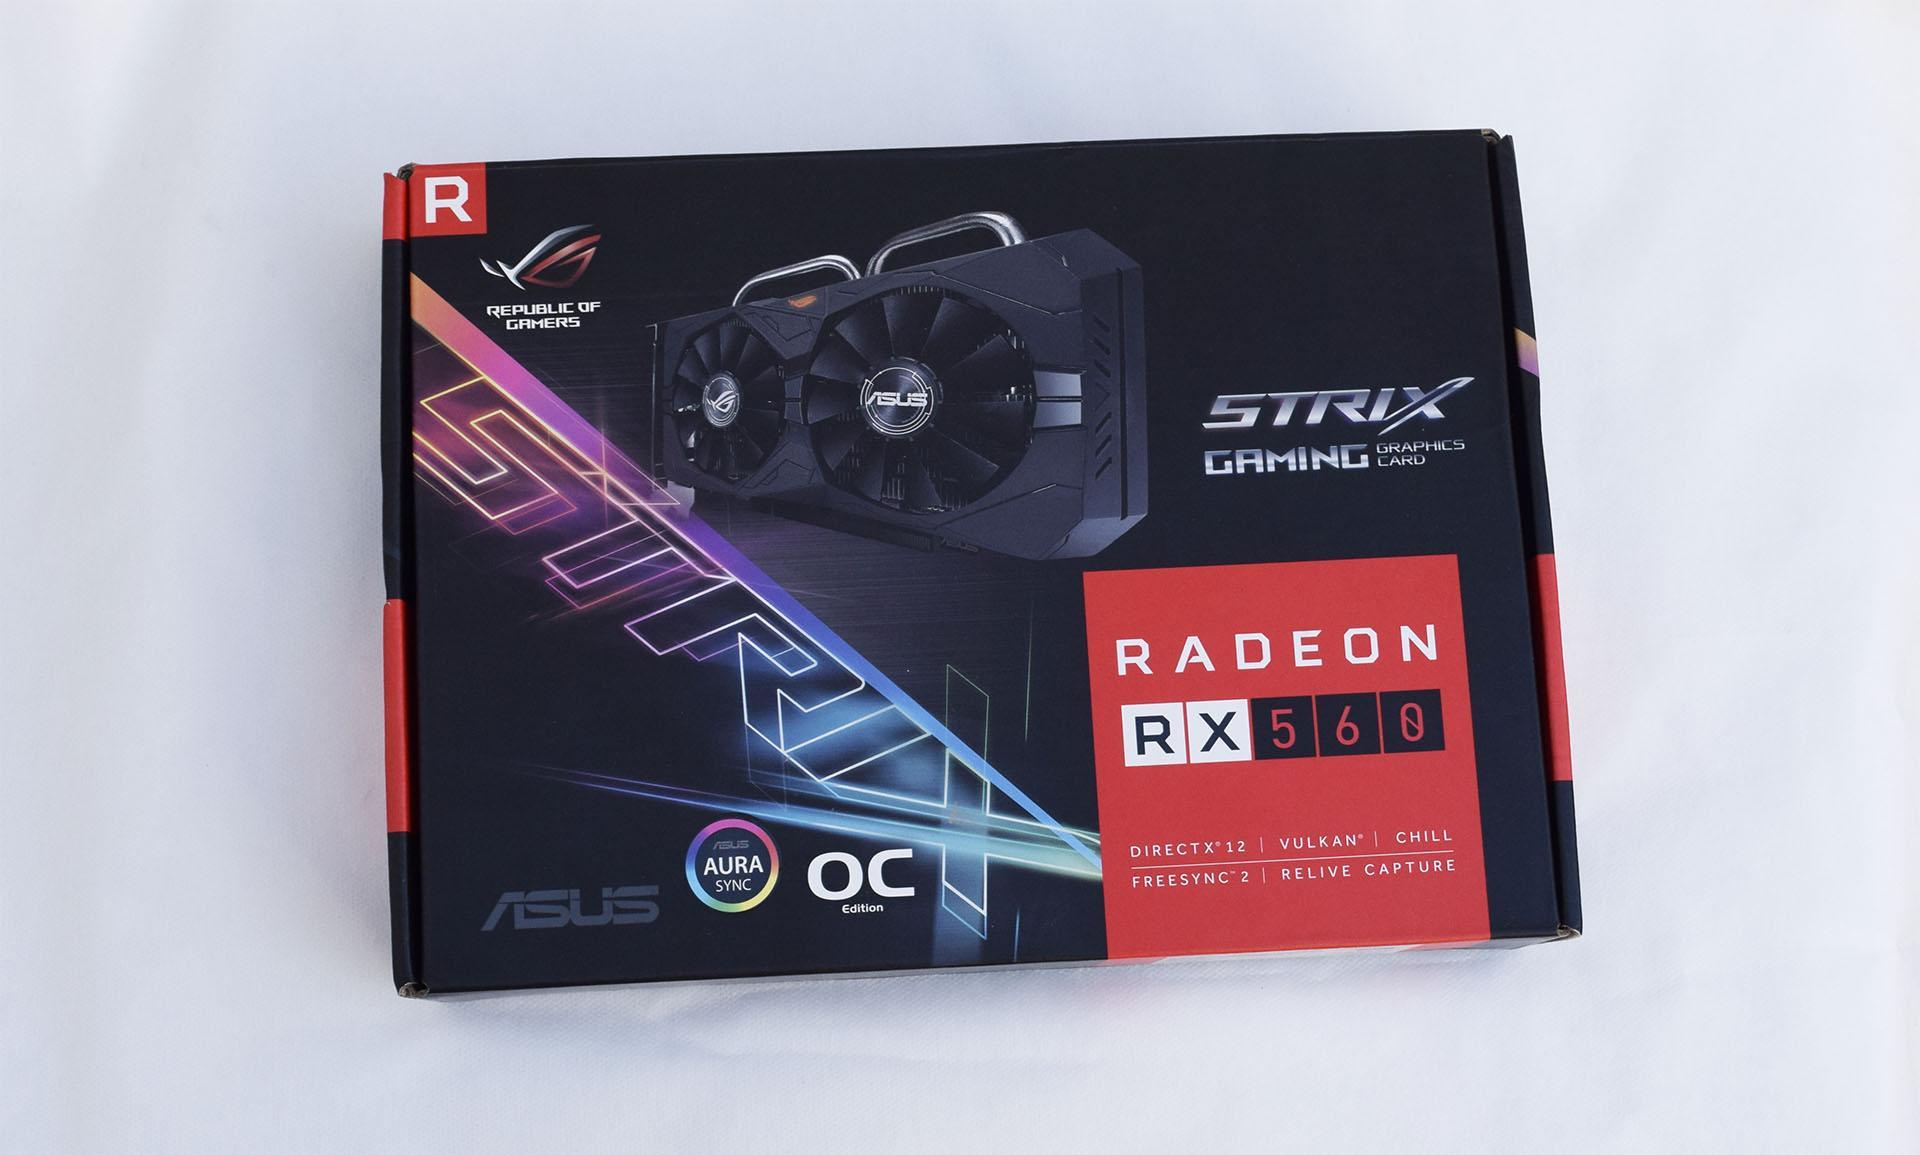 Teste da placa de vídeo ASUS Radeon RX 560